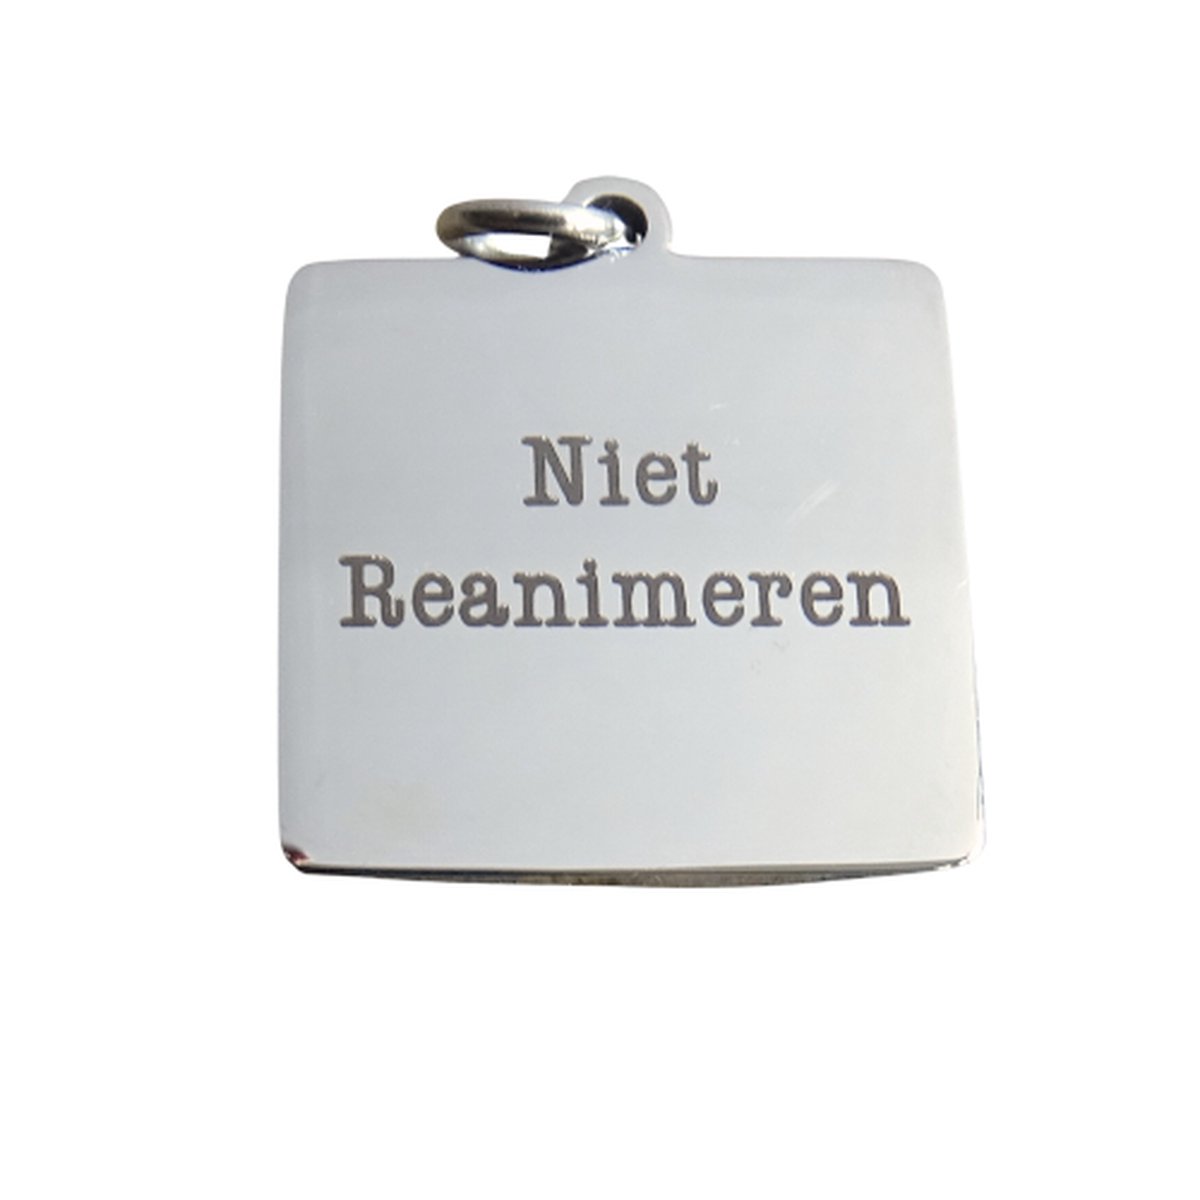 2 Love it Niet Reanimeren - Hanger - Penning - Vierkant - Stainless steel - 2 cm diameter - Zilverkleurig